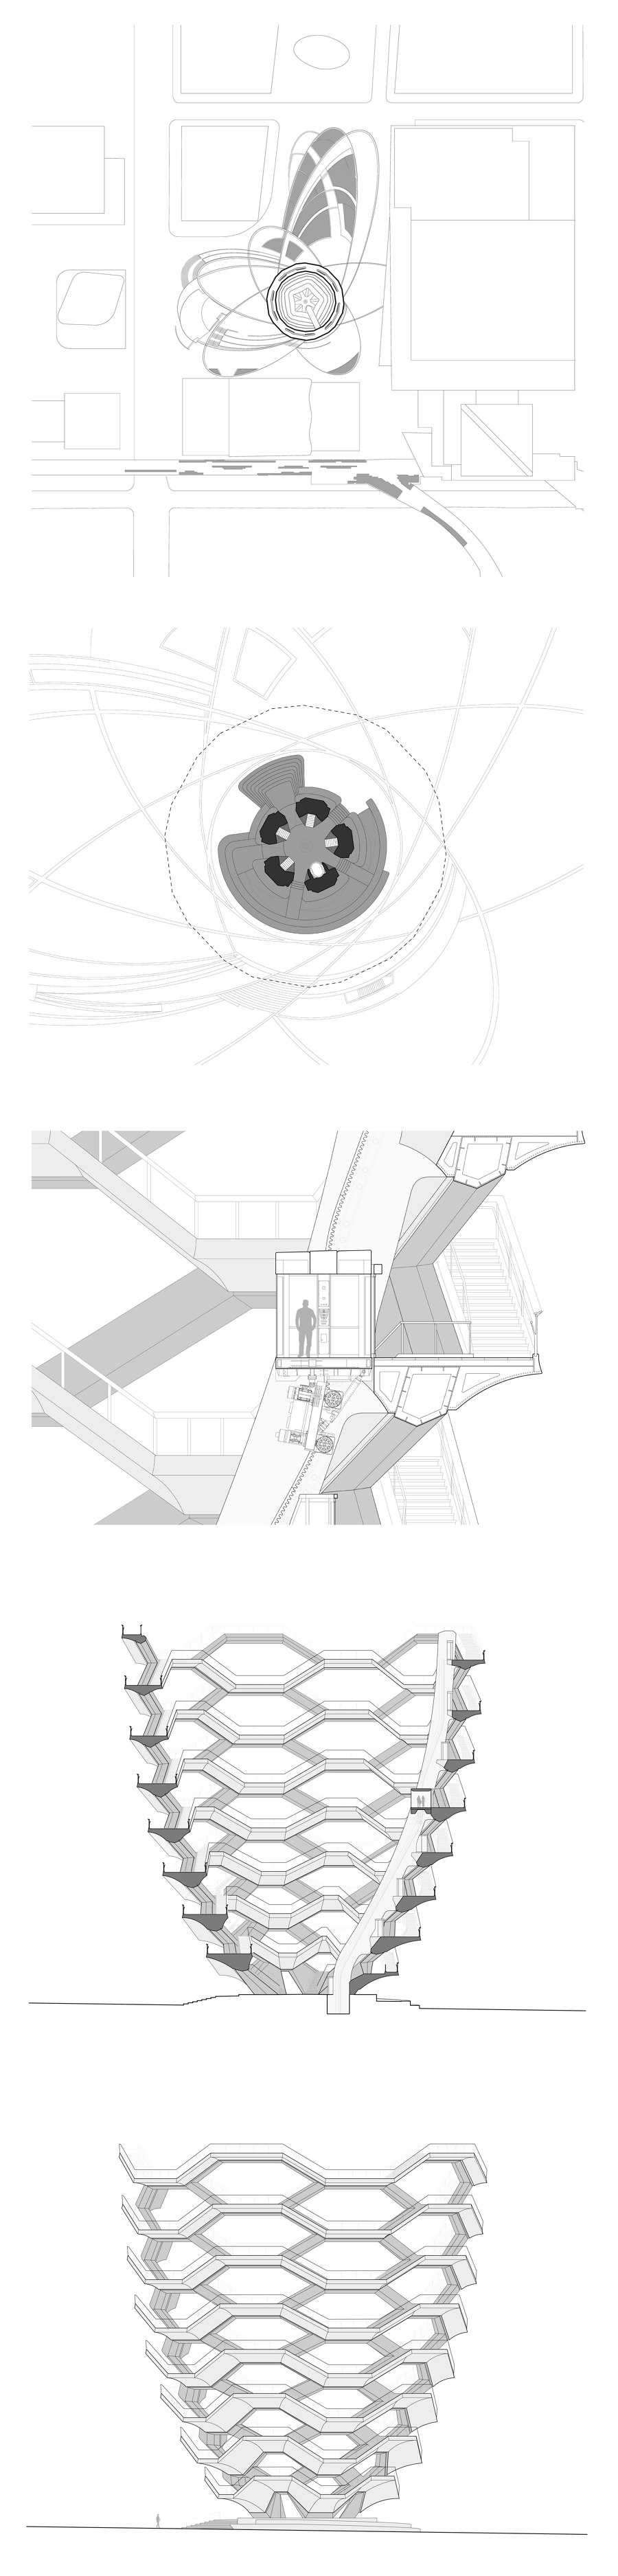 Vessel de Heatherwick Studio | Monumentos/esculturas/plataformas panorámicas